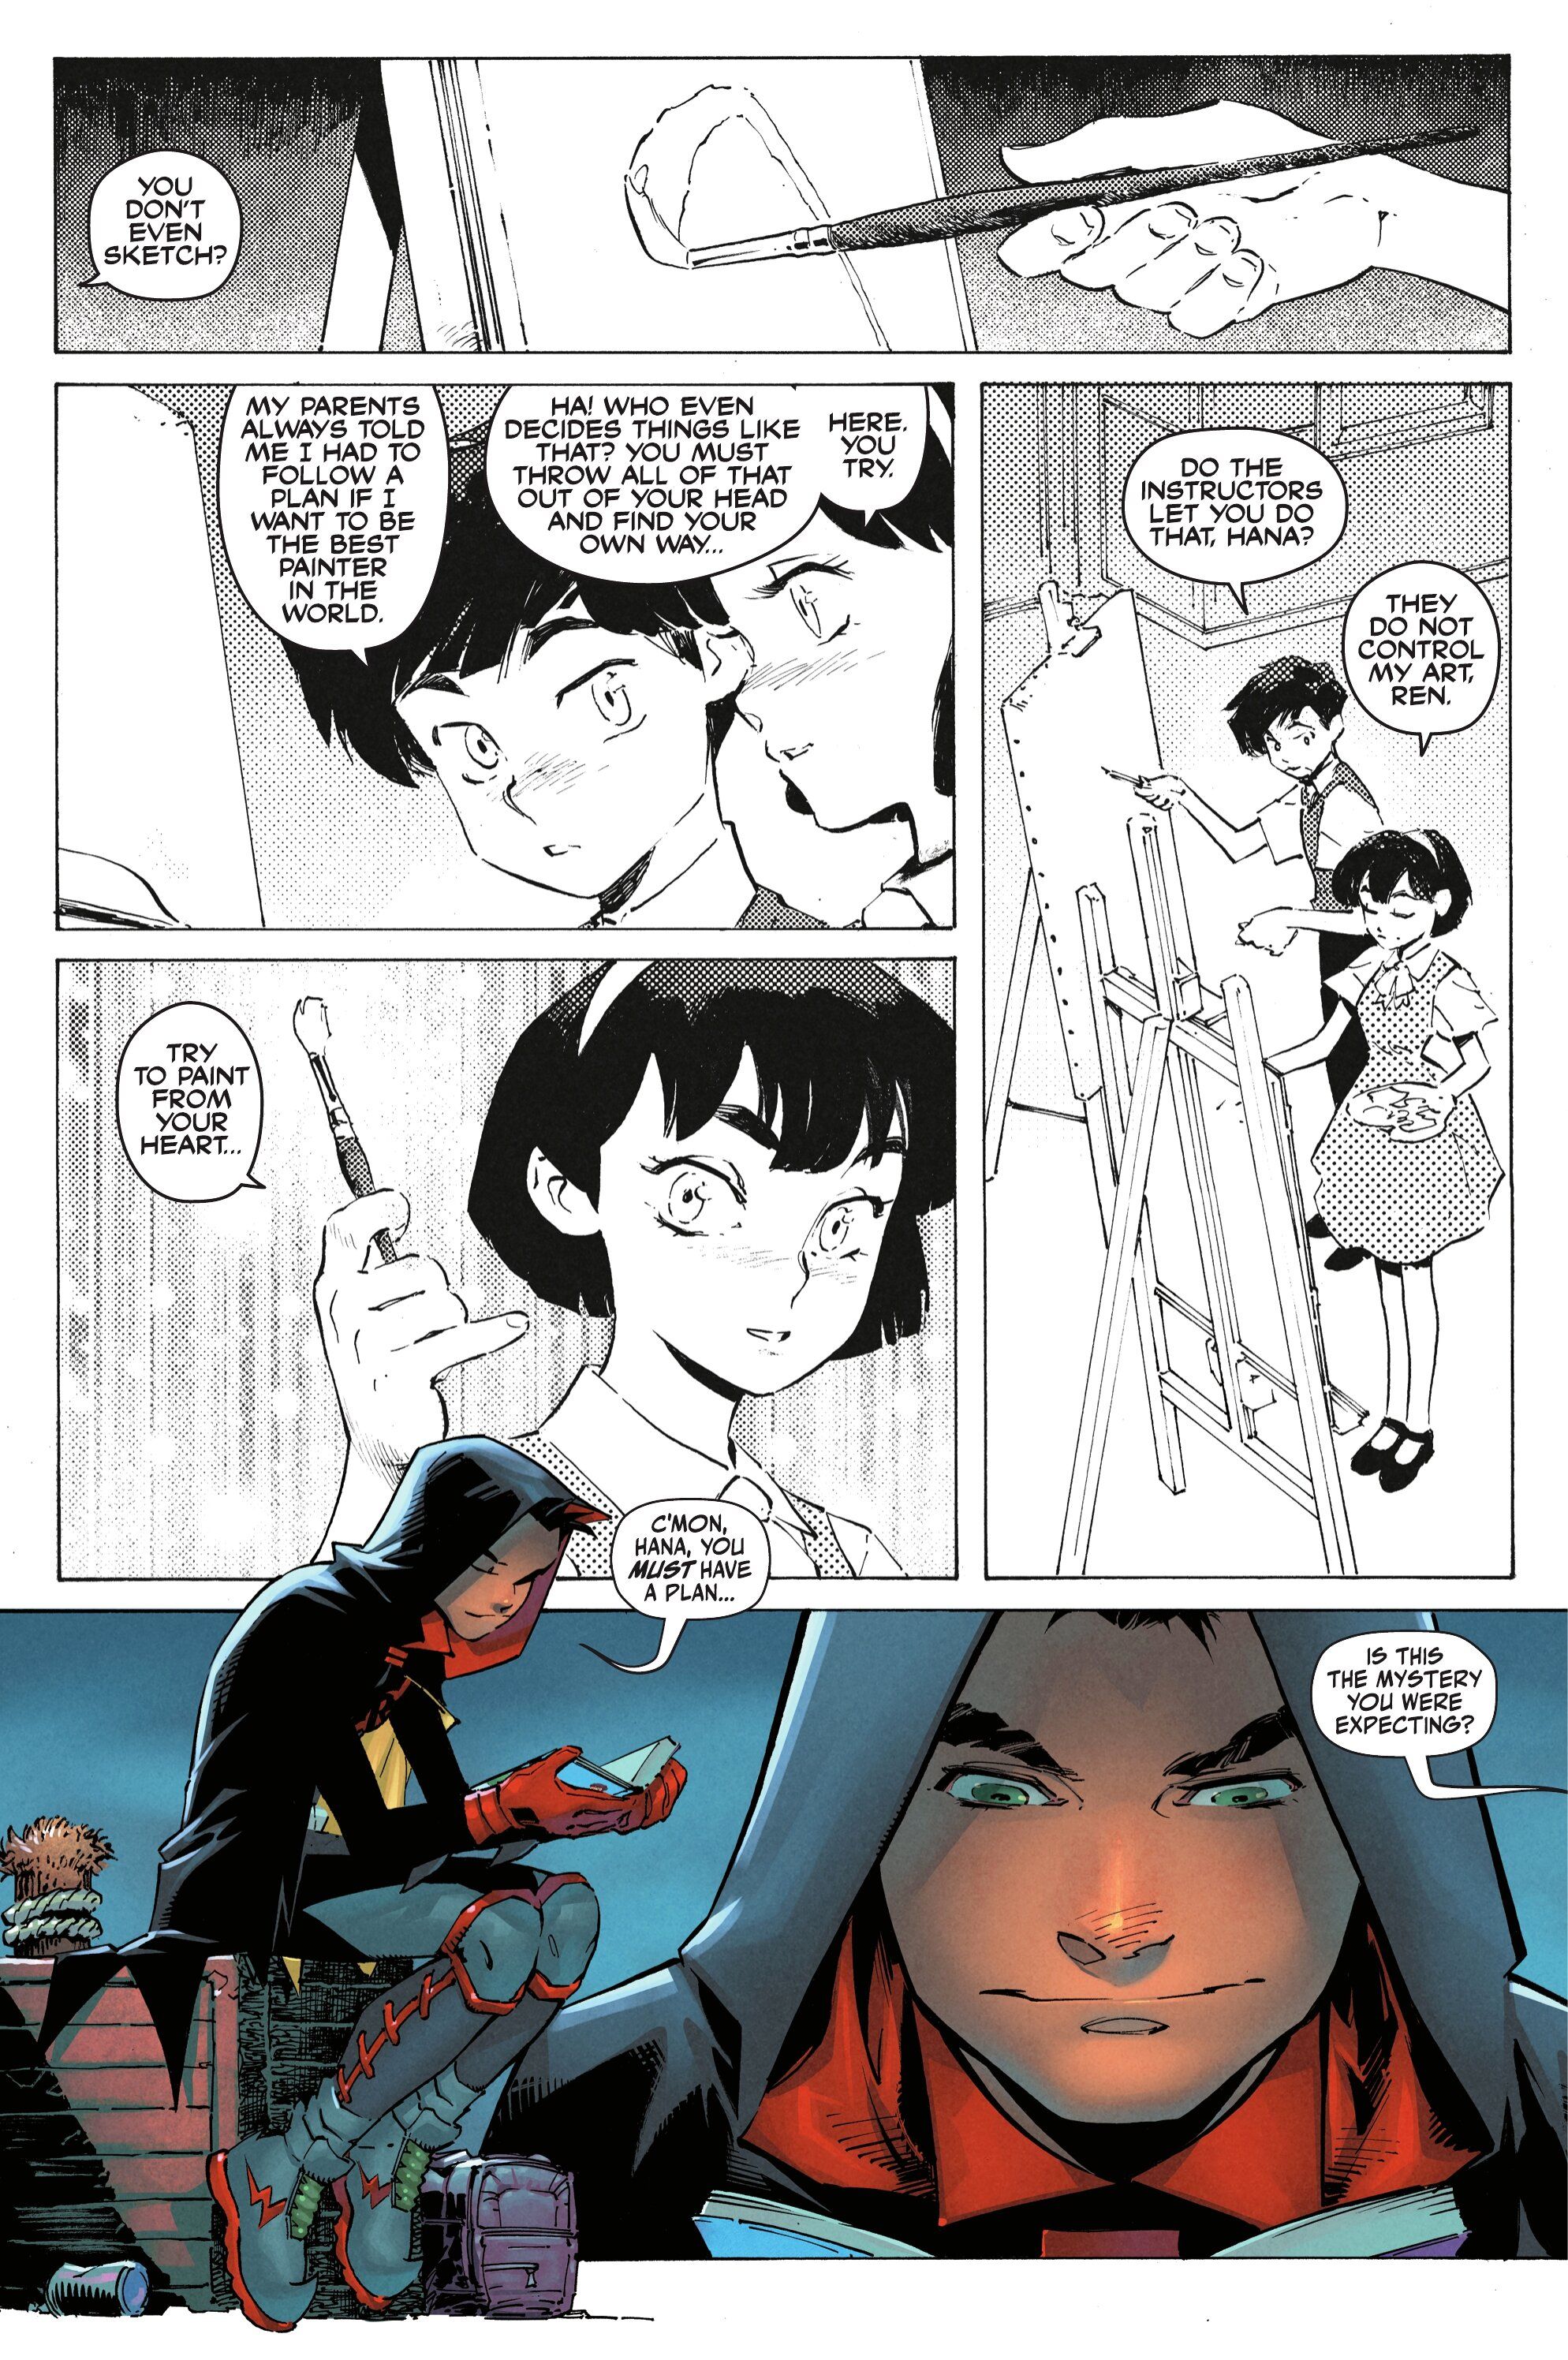 New Robin Comic Confirms: Damian Wayne is a Manga Fan